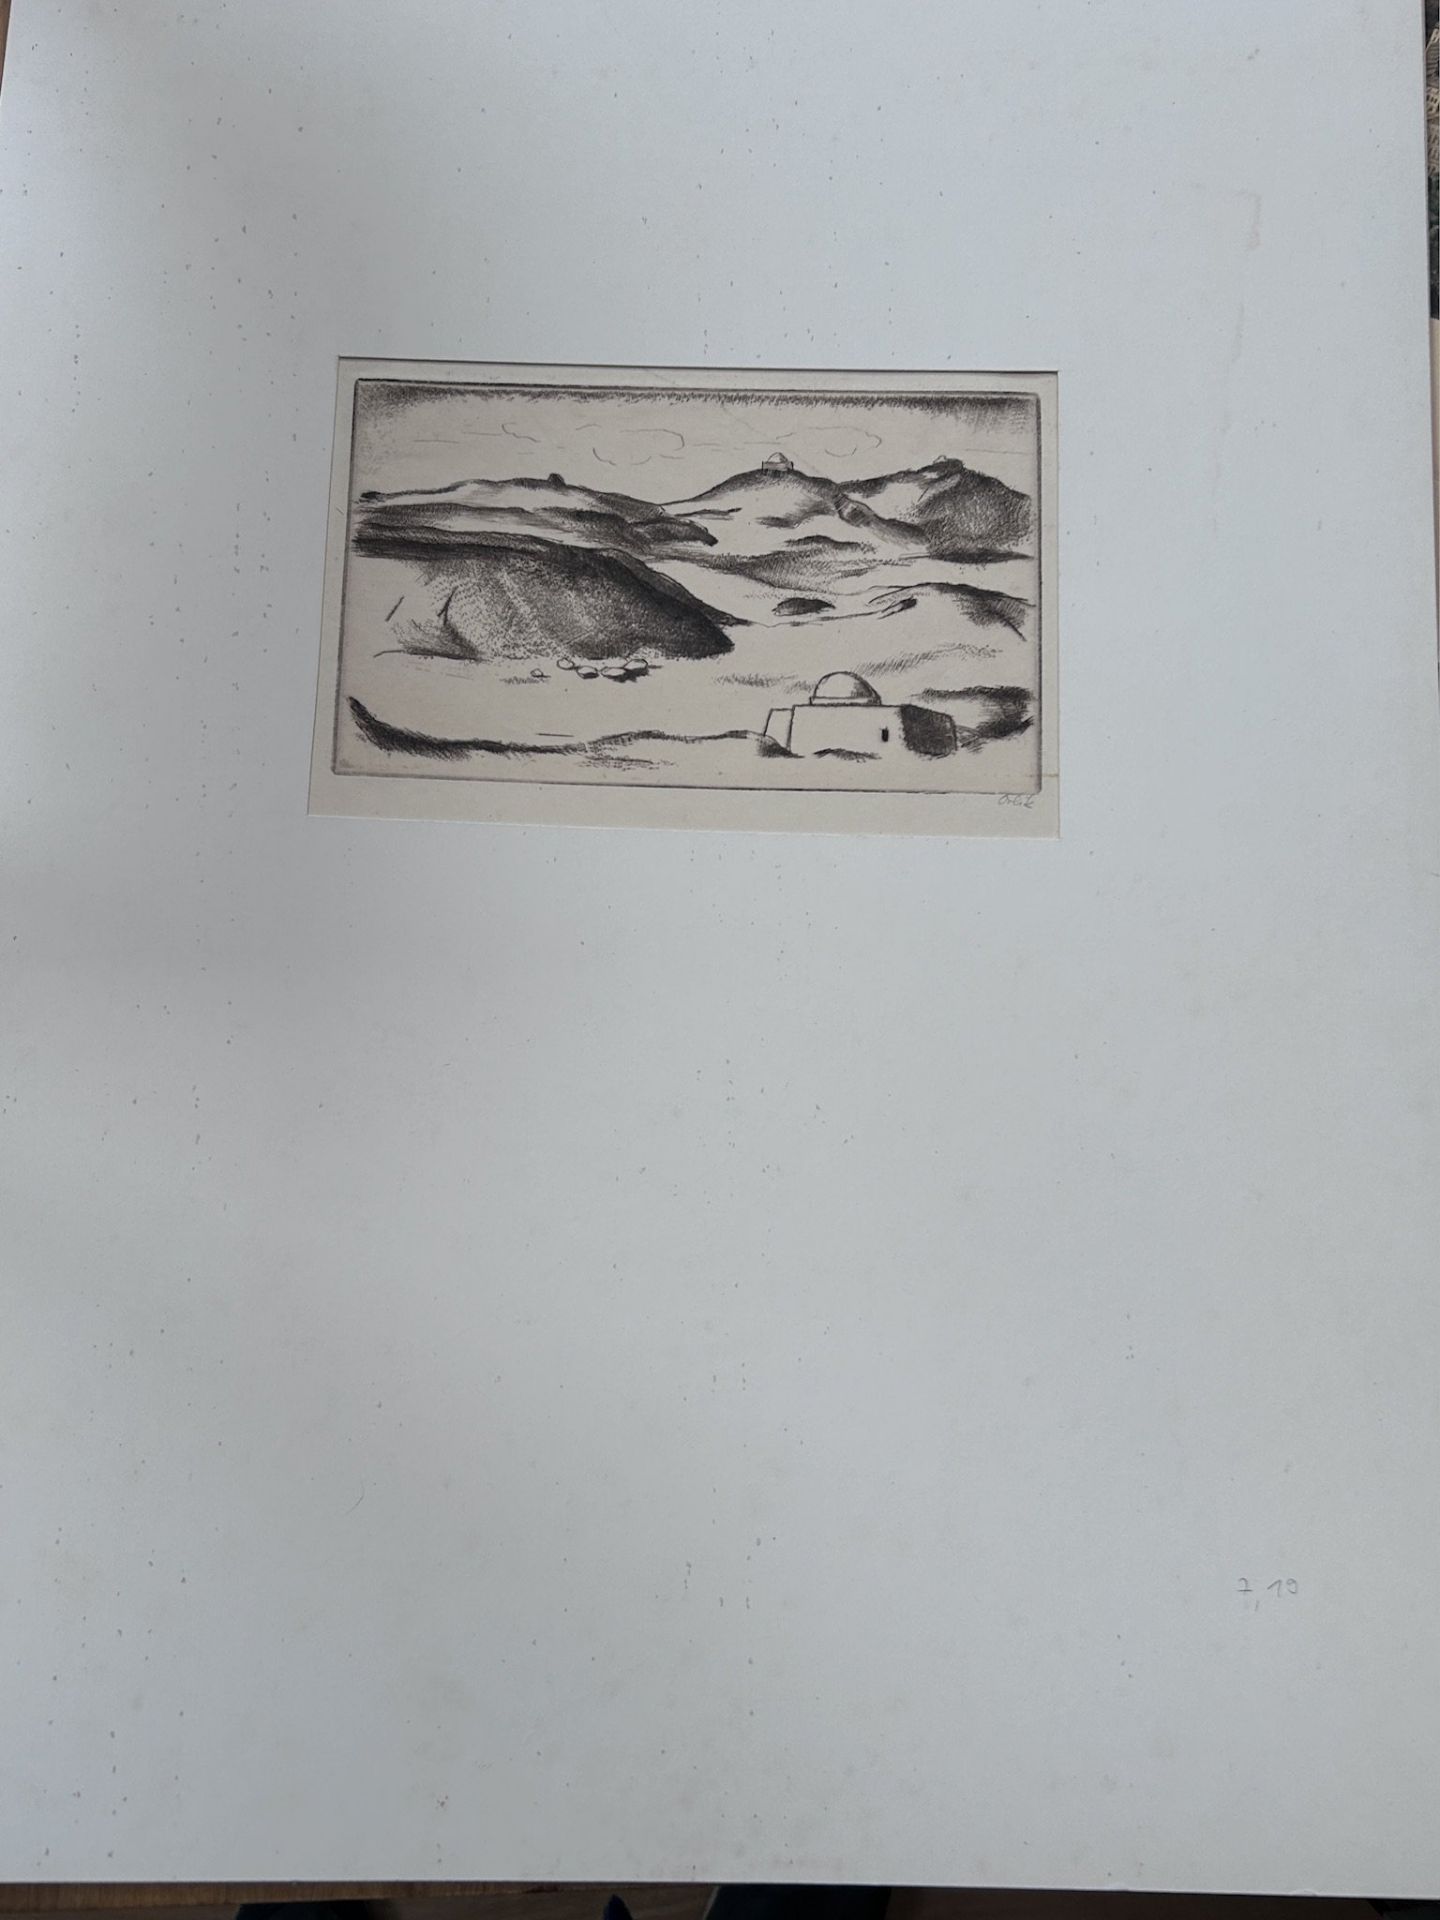 Emil ORLIK (1870-1932) , Blatt aus der Serie "Reise nach Ägypten" Aquatinta Radierung, signiert, MG - Image 2 of 3